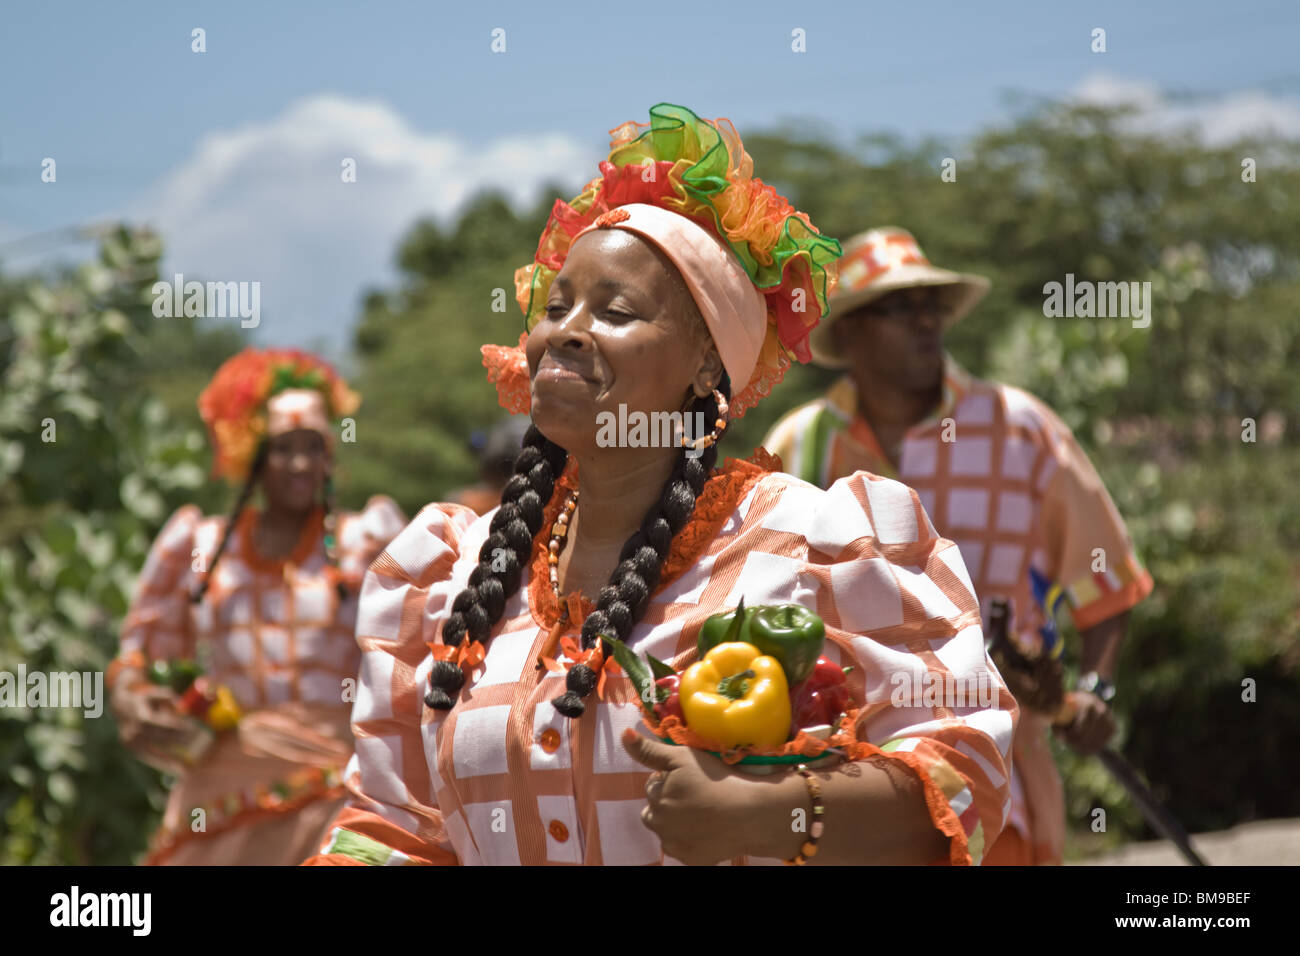 Une femme vêtue de costumes colorés au cours de danses Harvest Festival, Willemstad, Curaçao, Antilles néerlandaises, des Caraïbes. Banque D'Images